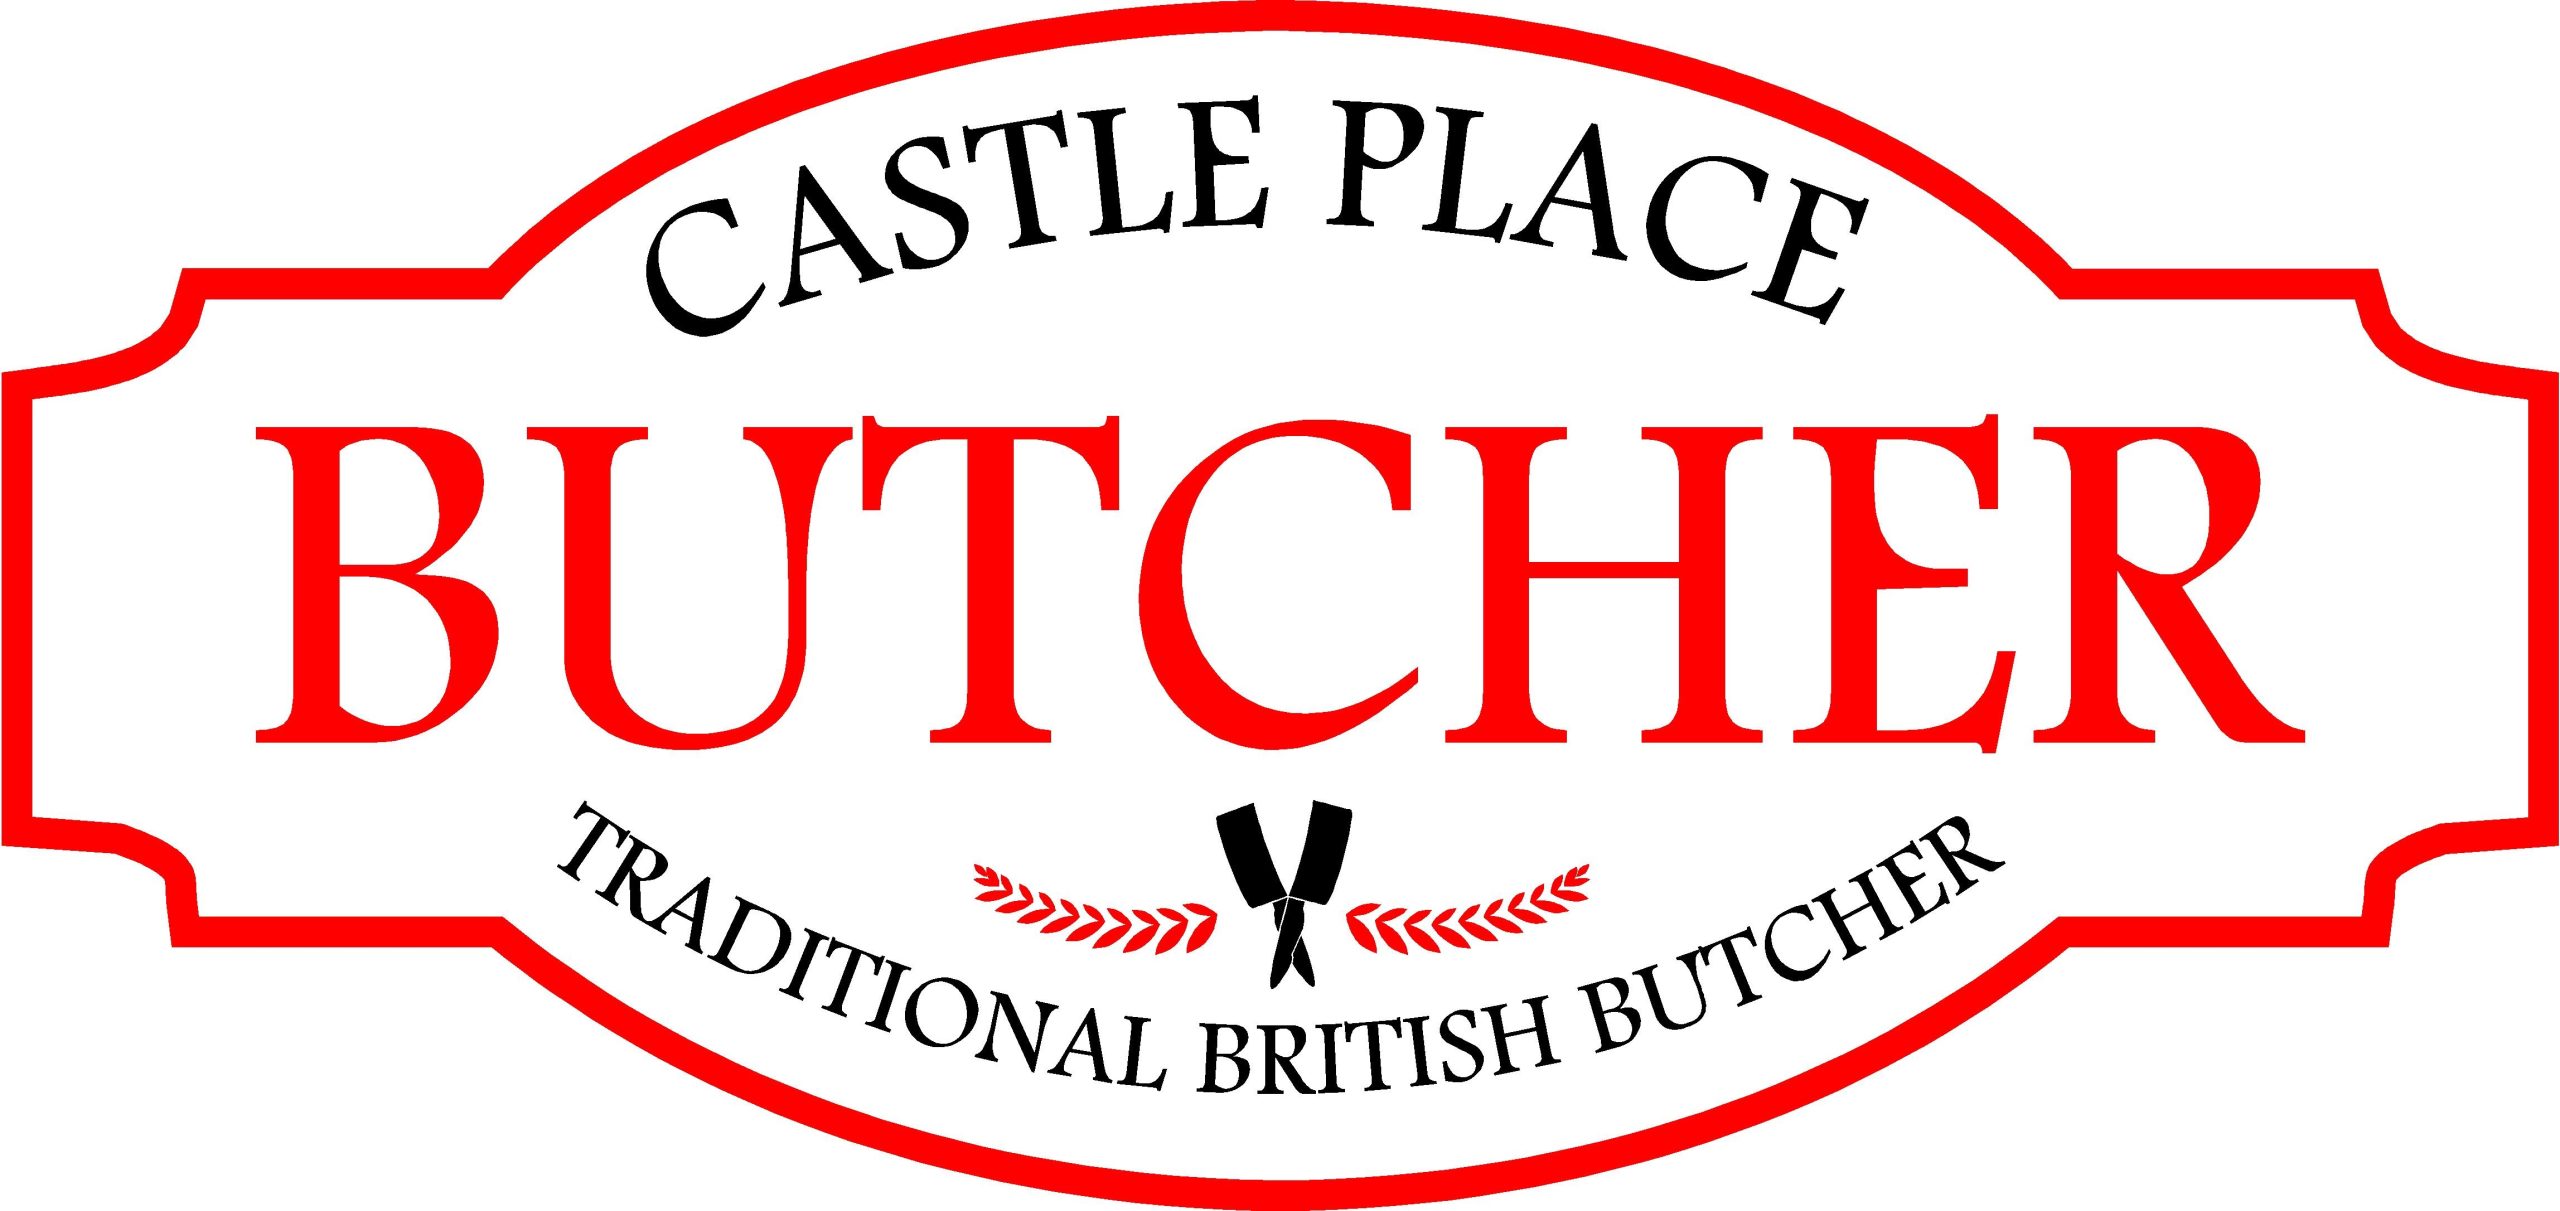 castle place butcher